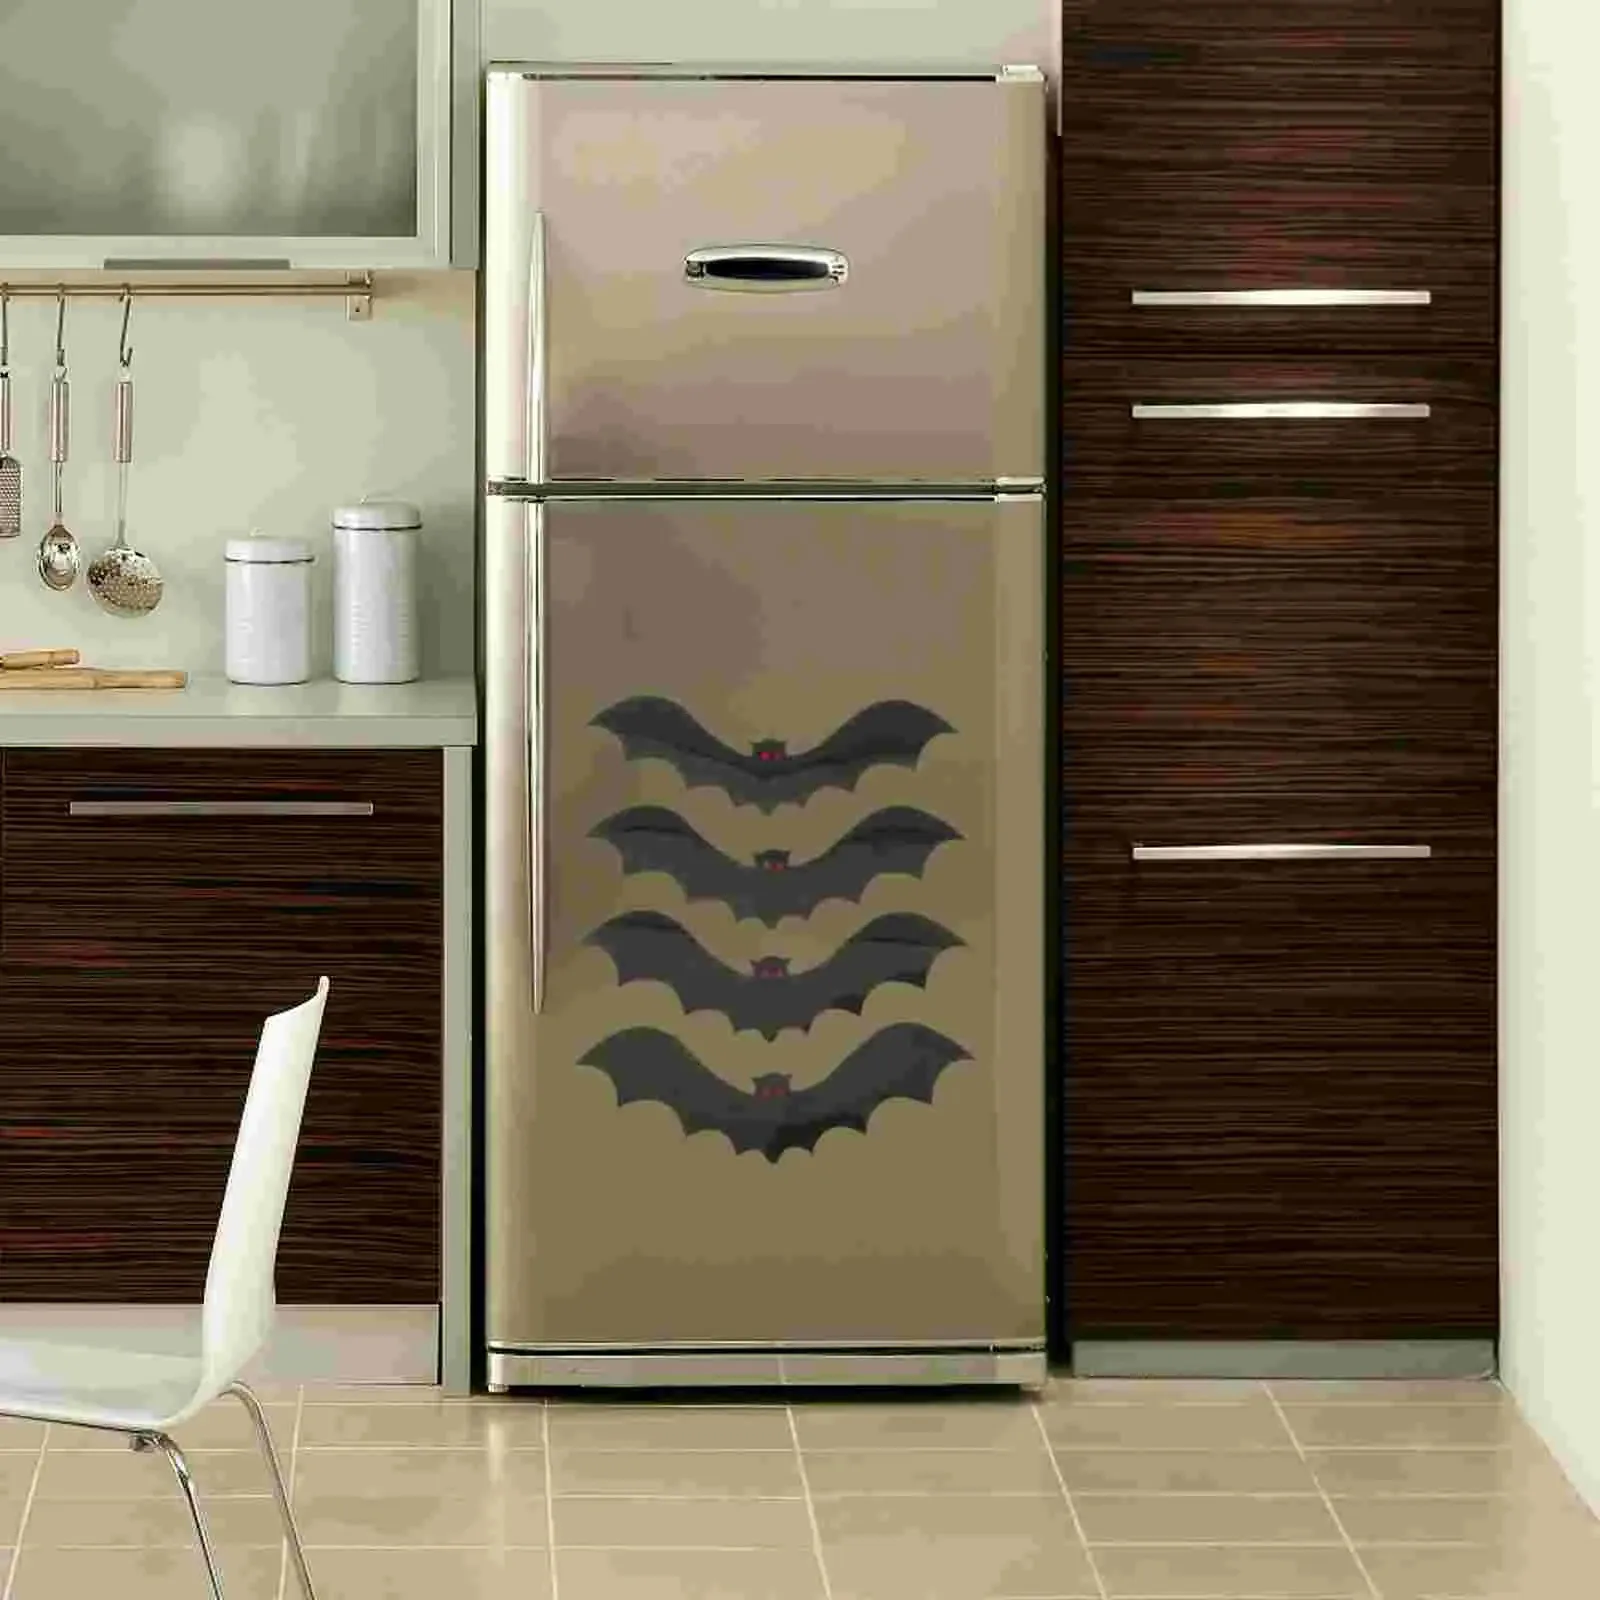 壁ステッカー磁気バットステッカーステッカー装飾マグネットゴシックハロウィーン冷蔵庫冷蔵庫231208